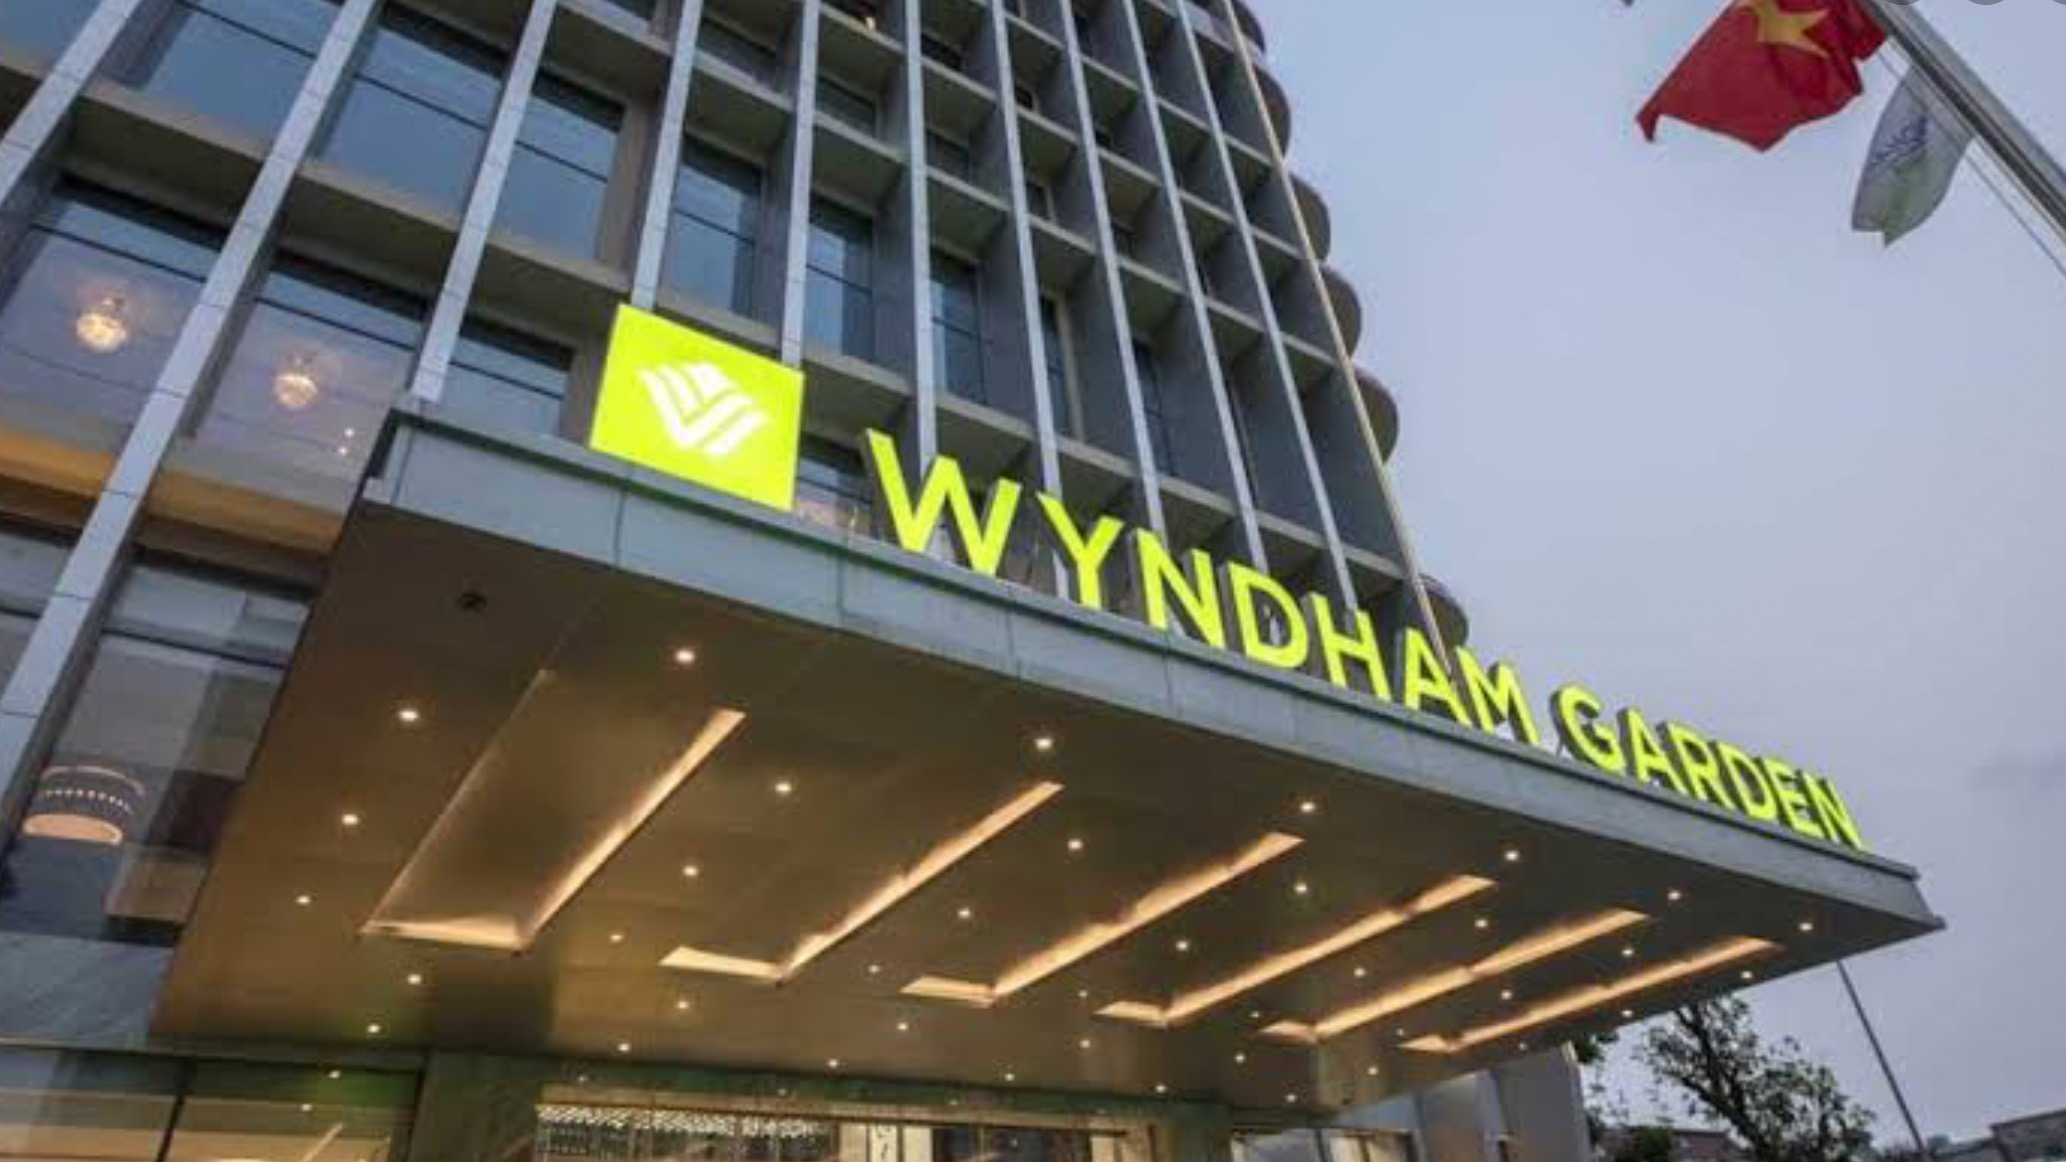 Hilton'un ardından şimdi de Wyndham... 1000 otelini kapatıyor